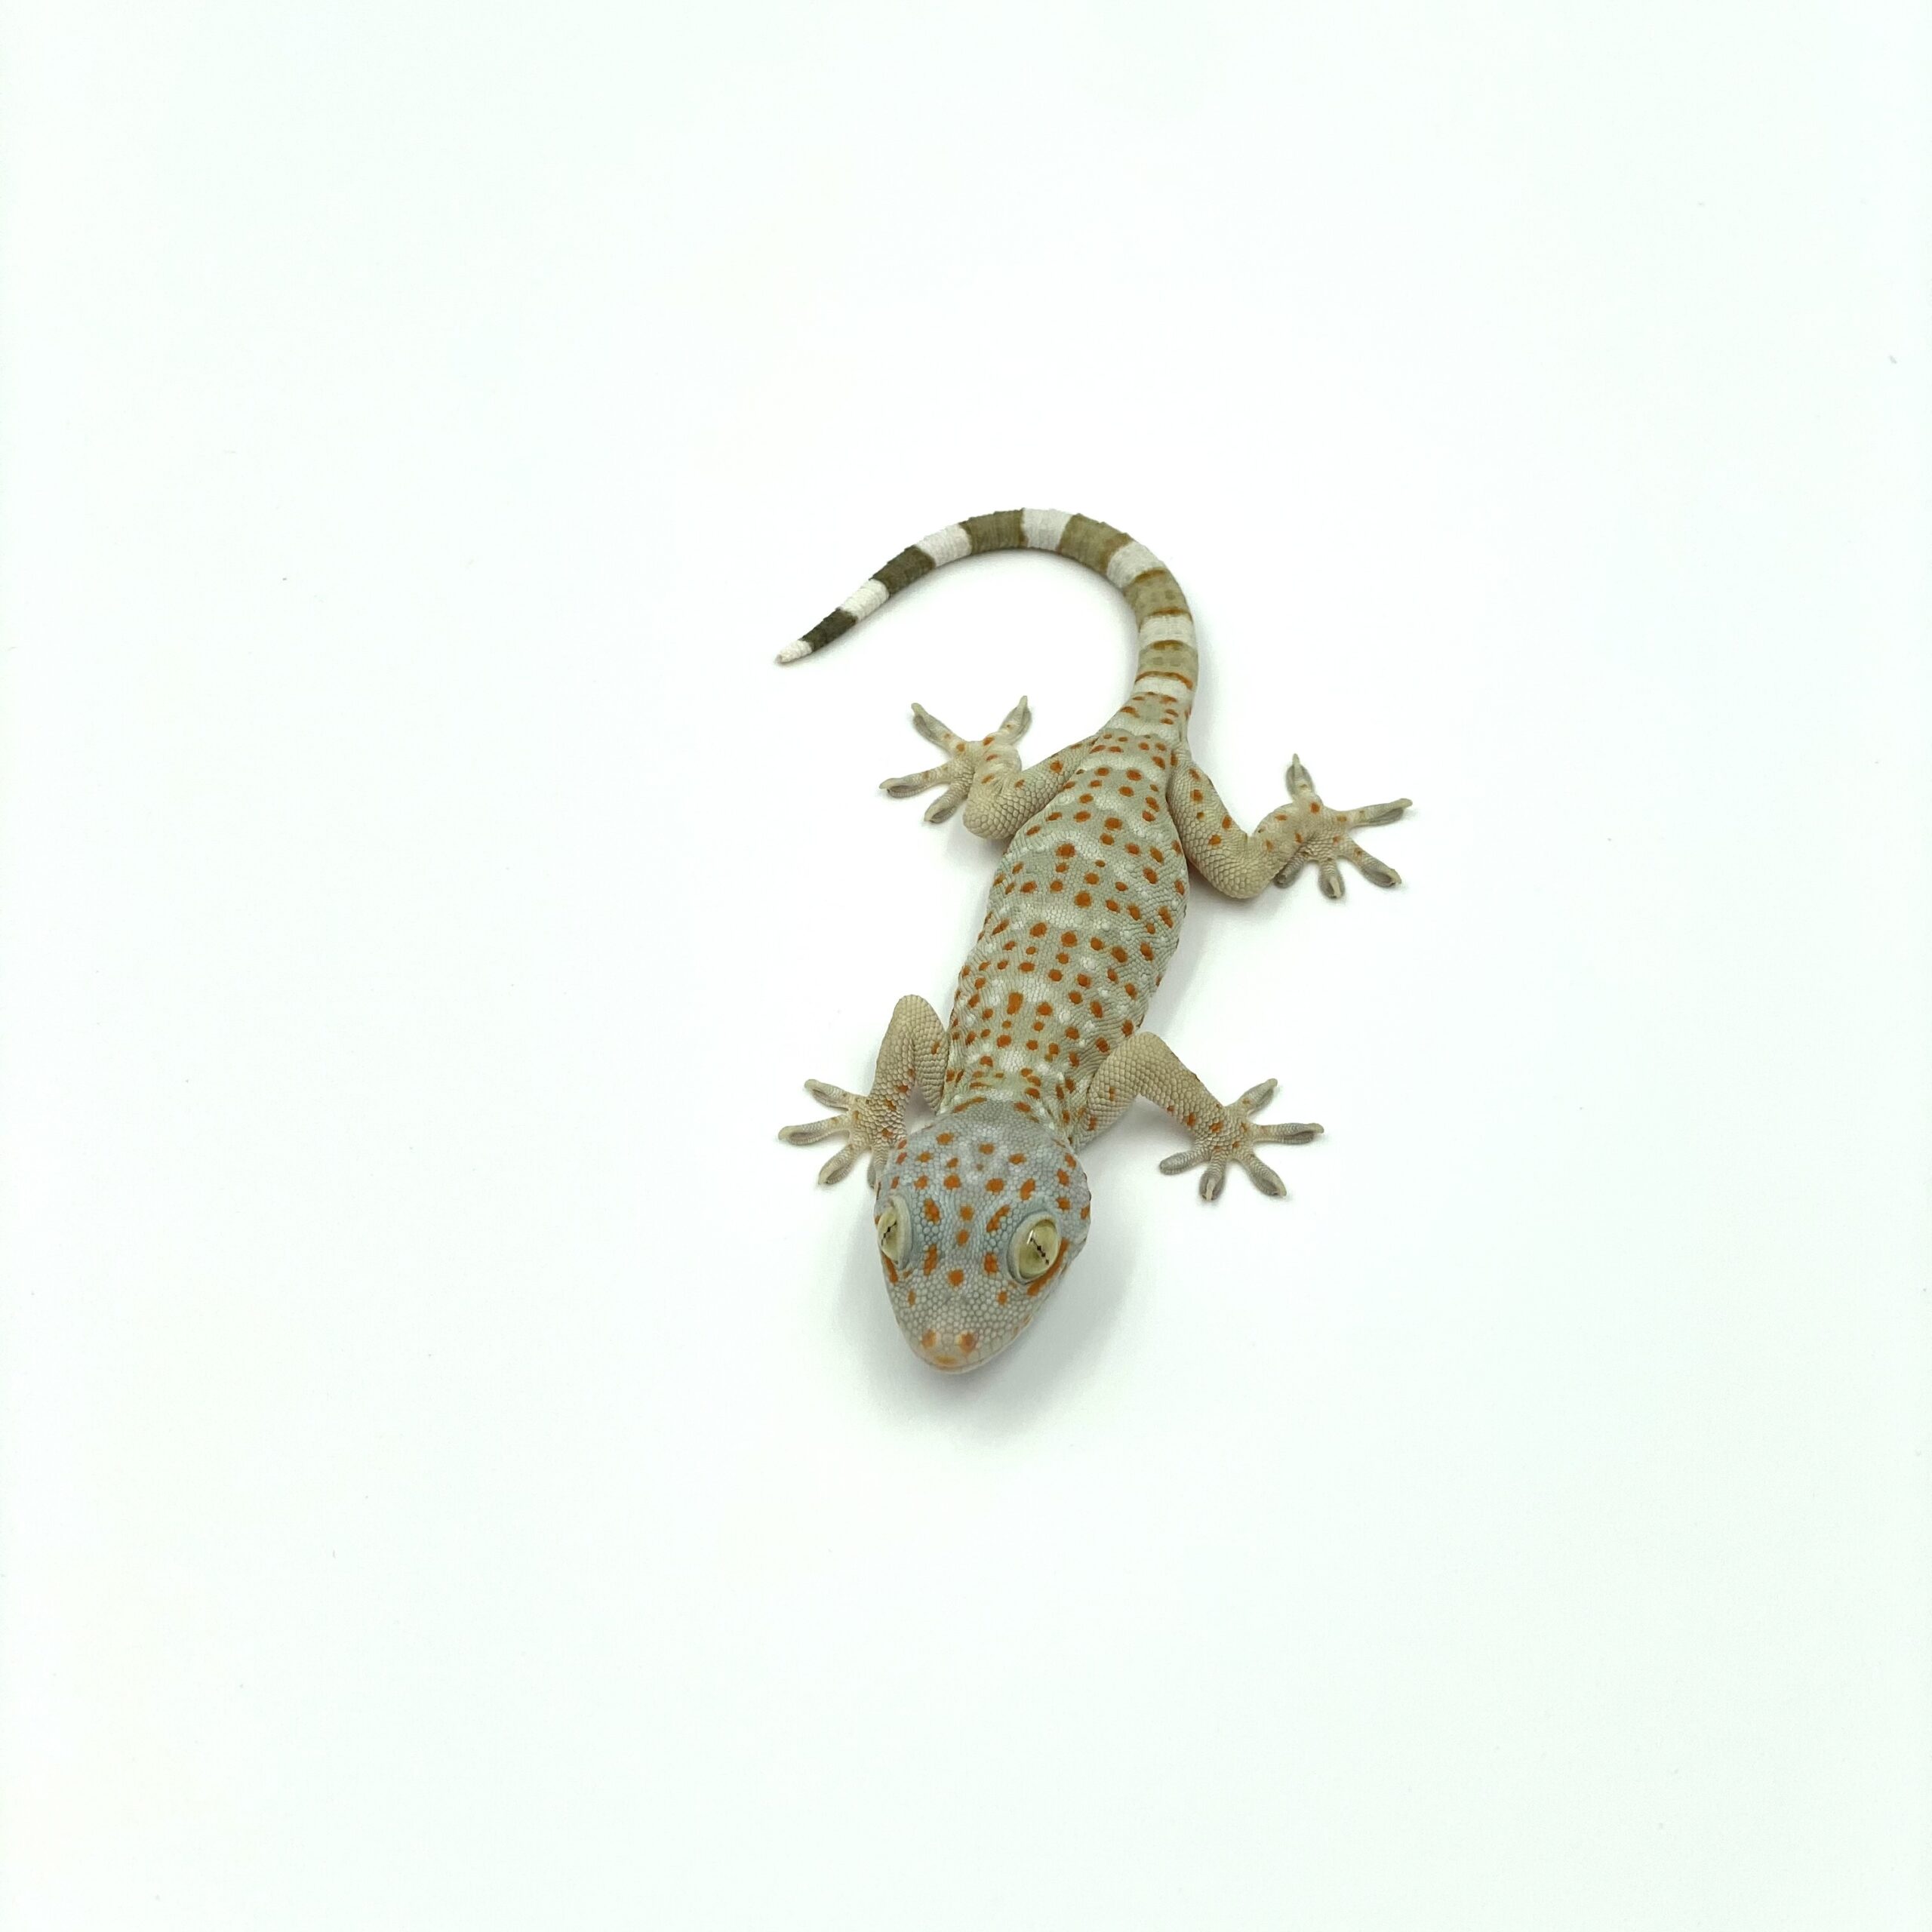 Tokay gecko | Gekko gecko